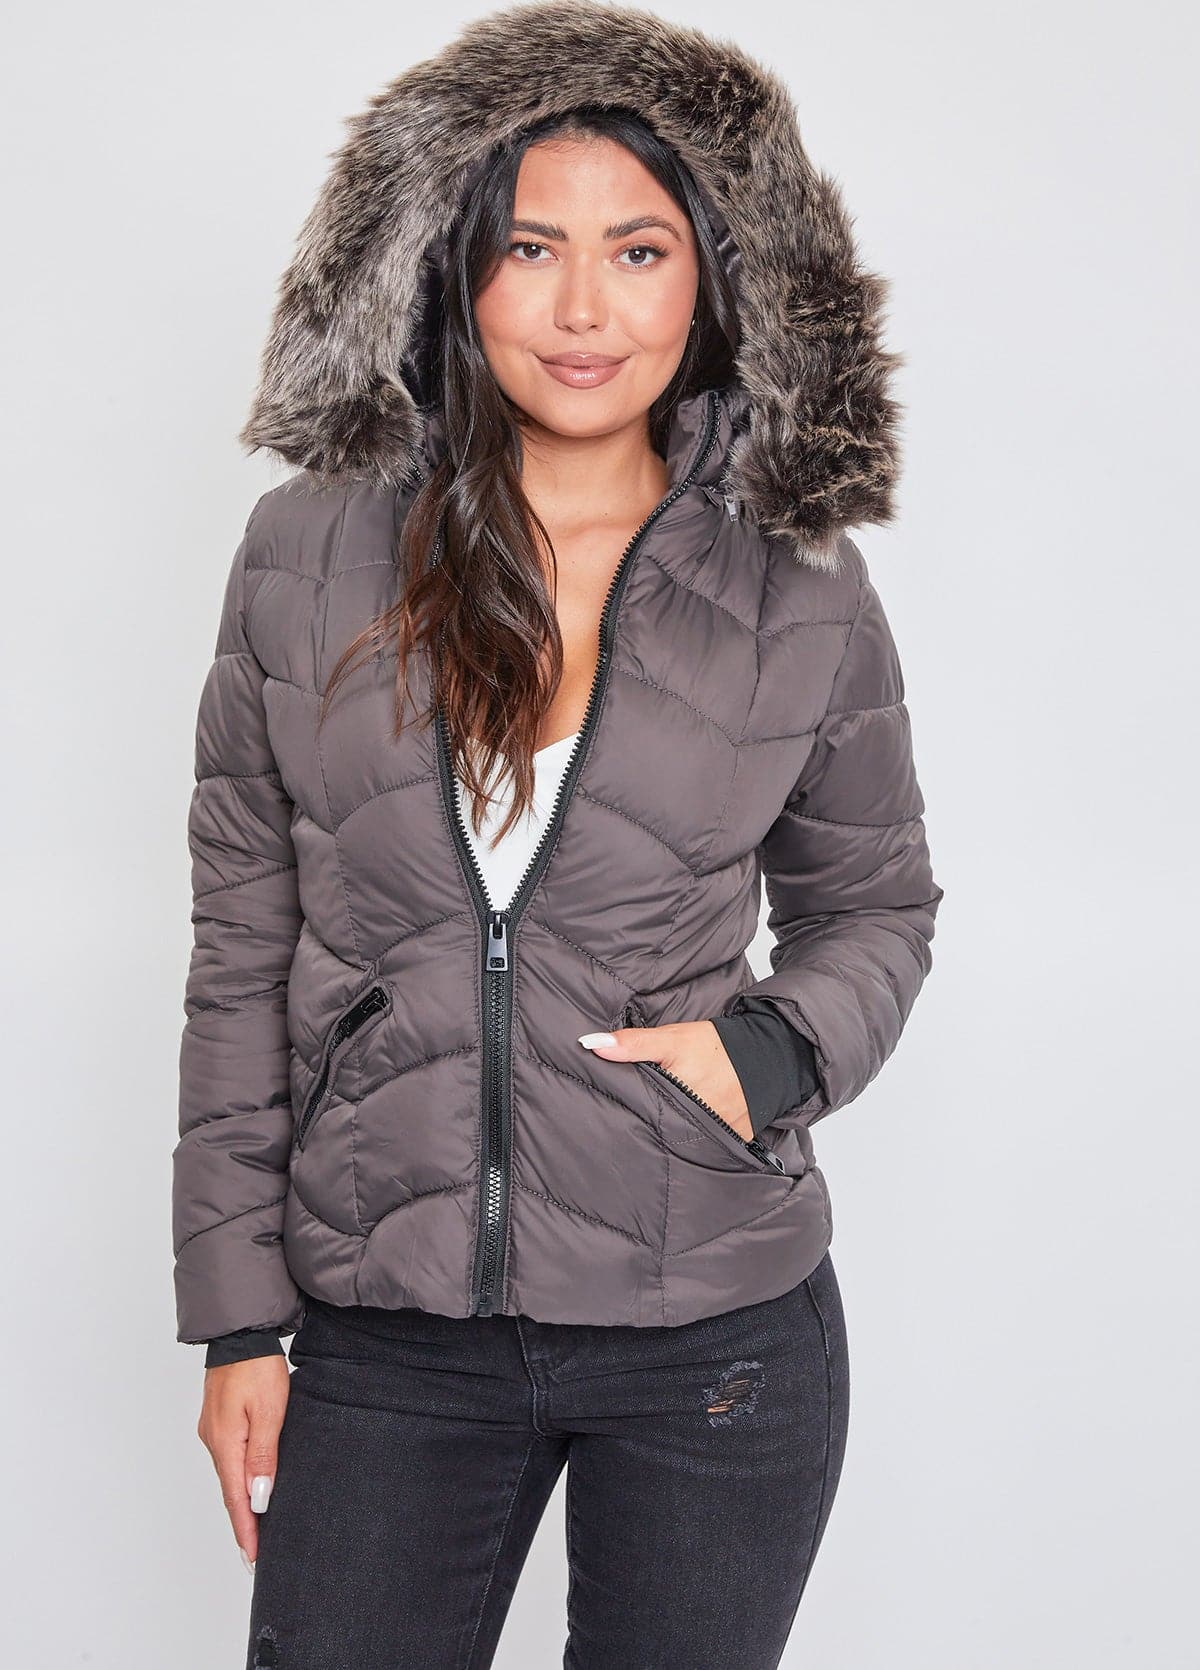 Oiumov Winter Jackets for Women,Women Thick Fleece Lined Plush Hooded  Windproof Warm Down Long Jacket Faux Fur Coat Outerwear